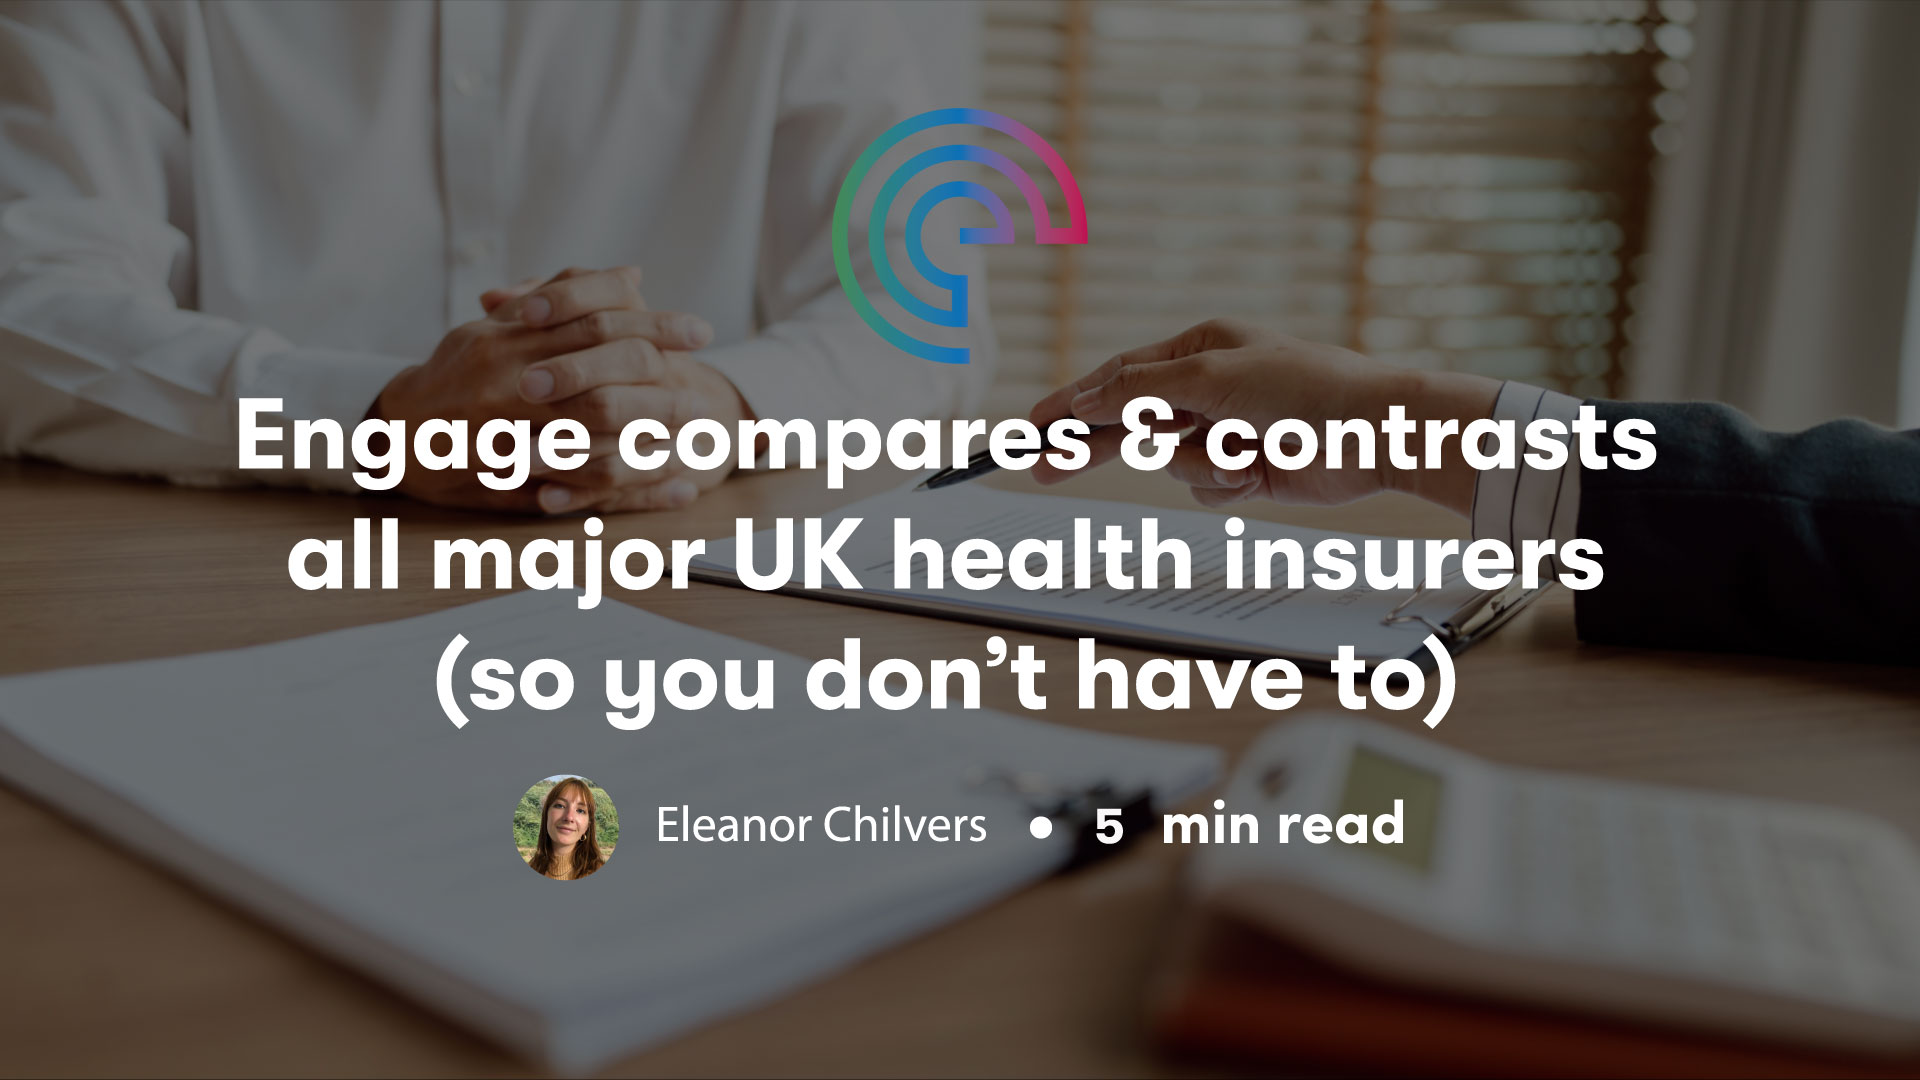 UK health insurers